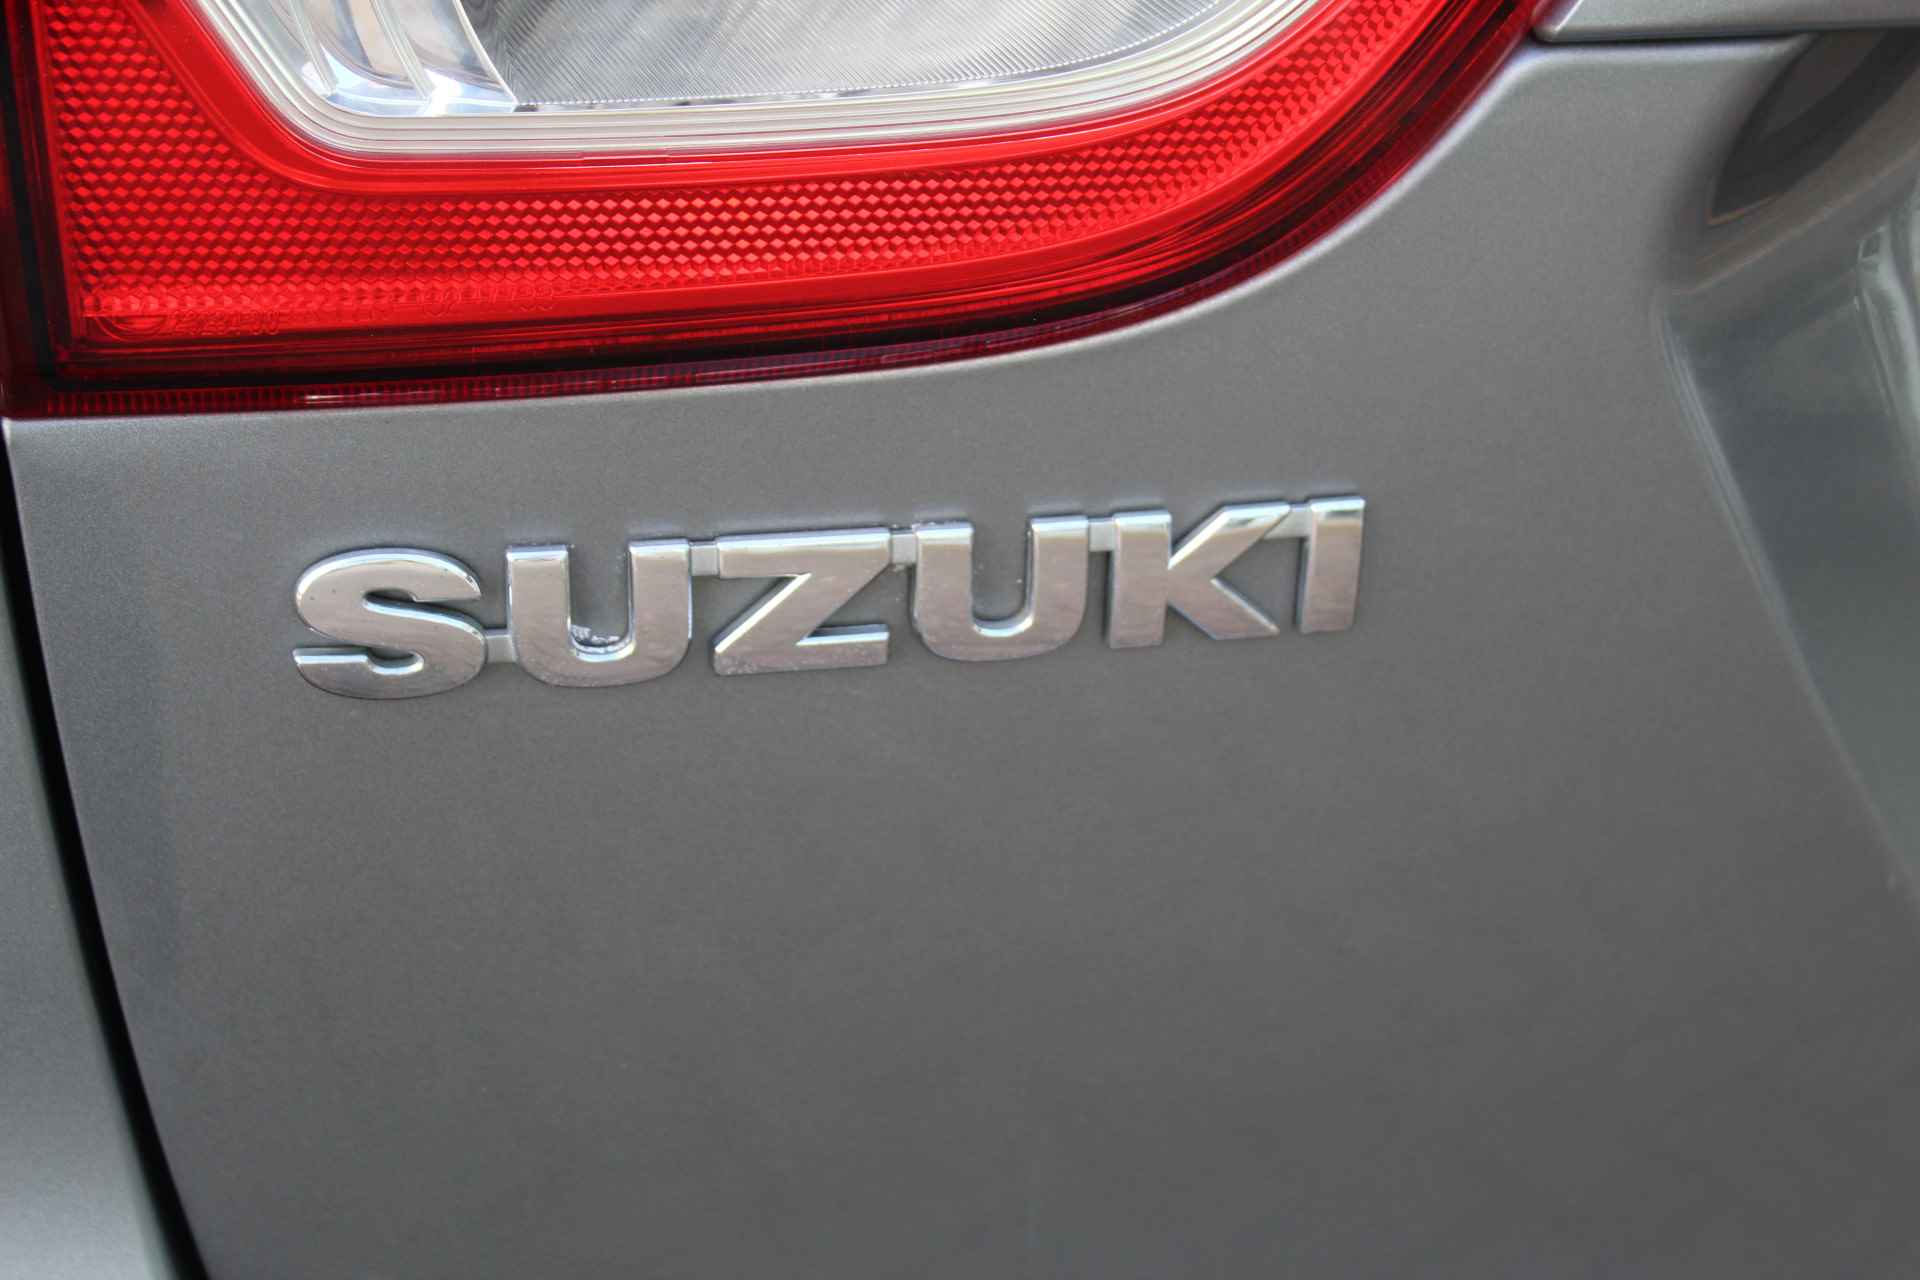 Suzuki S-Cross 1.6-120pk Comfort. Hoge zit ! Volautm. airco dual, telefoonvoorb., navigatie, cruise control, LM wielen, camera, trekhaak, metallic lak, verwarmde stoelen etc. - 34/46